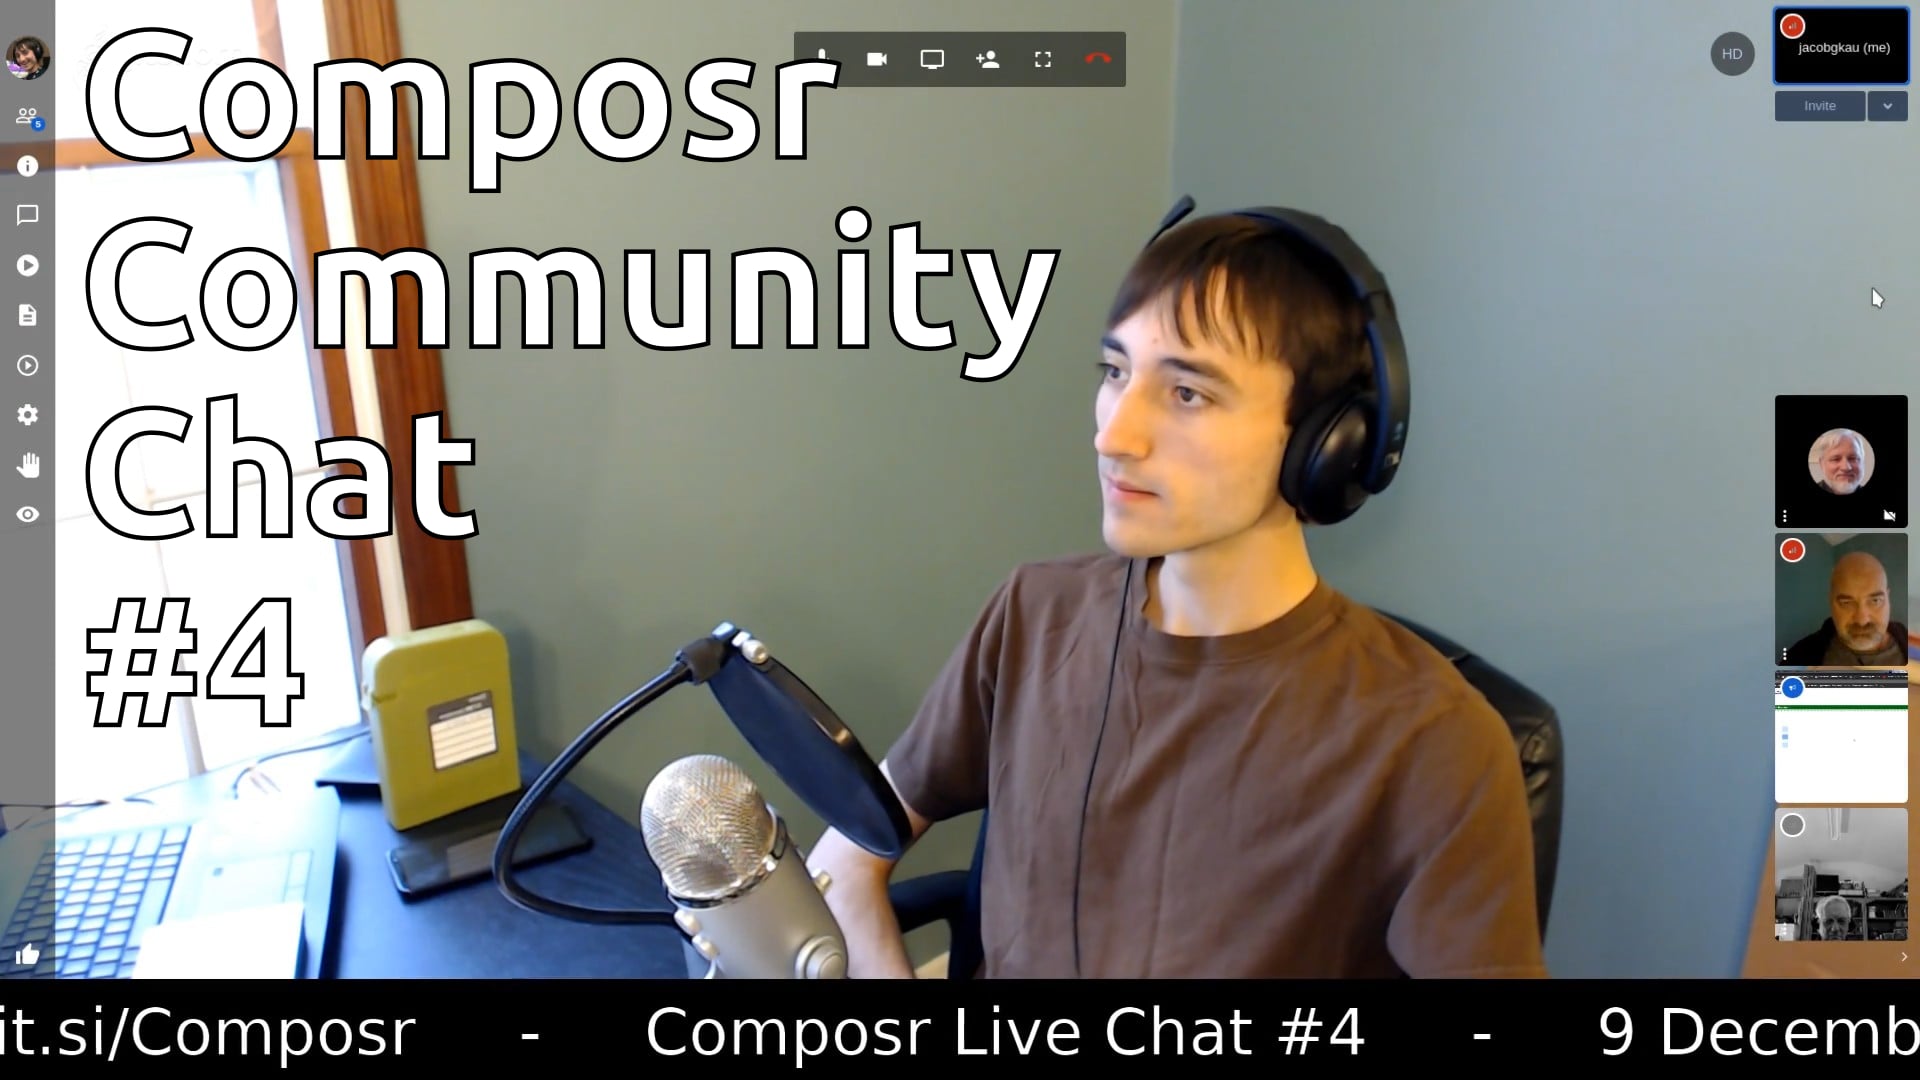 Composr Community Chat #4